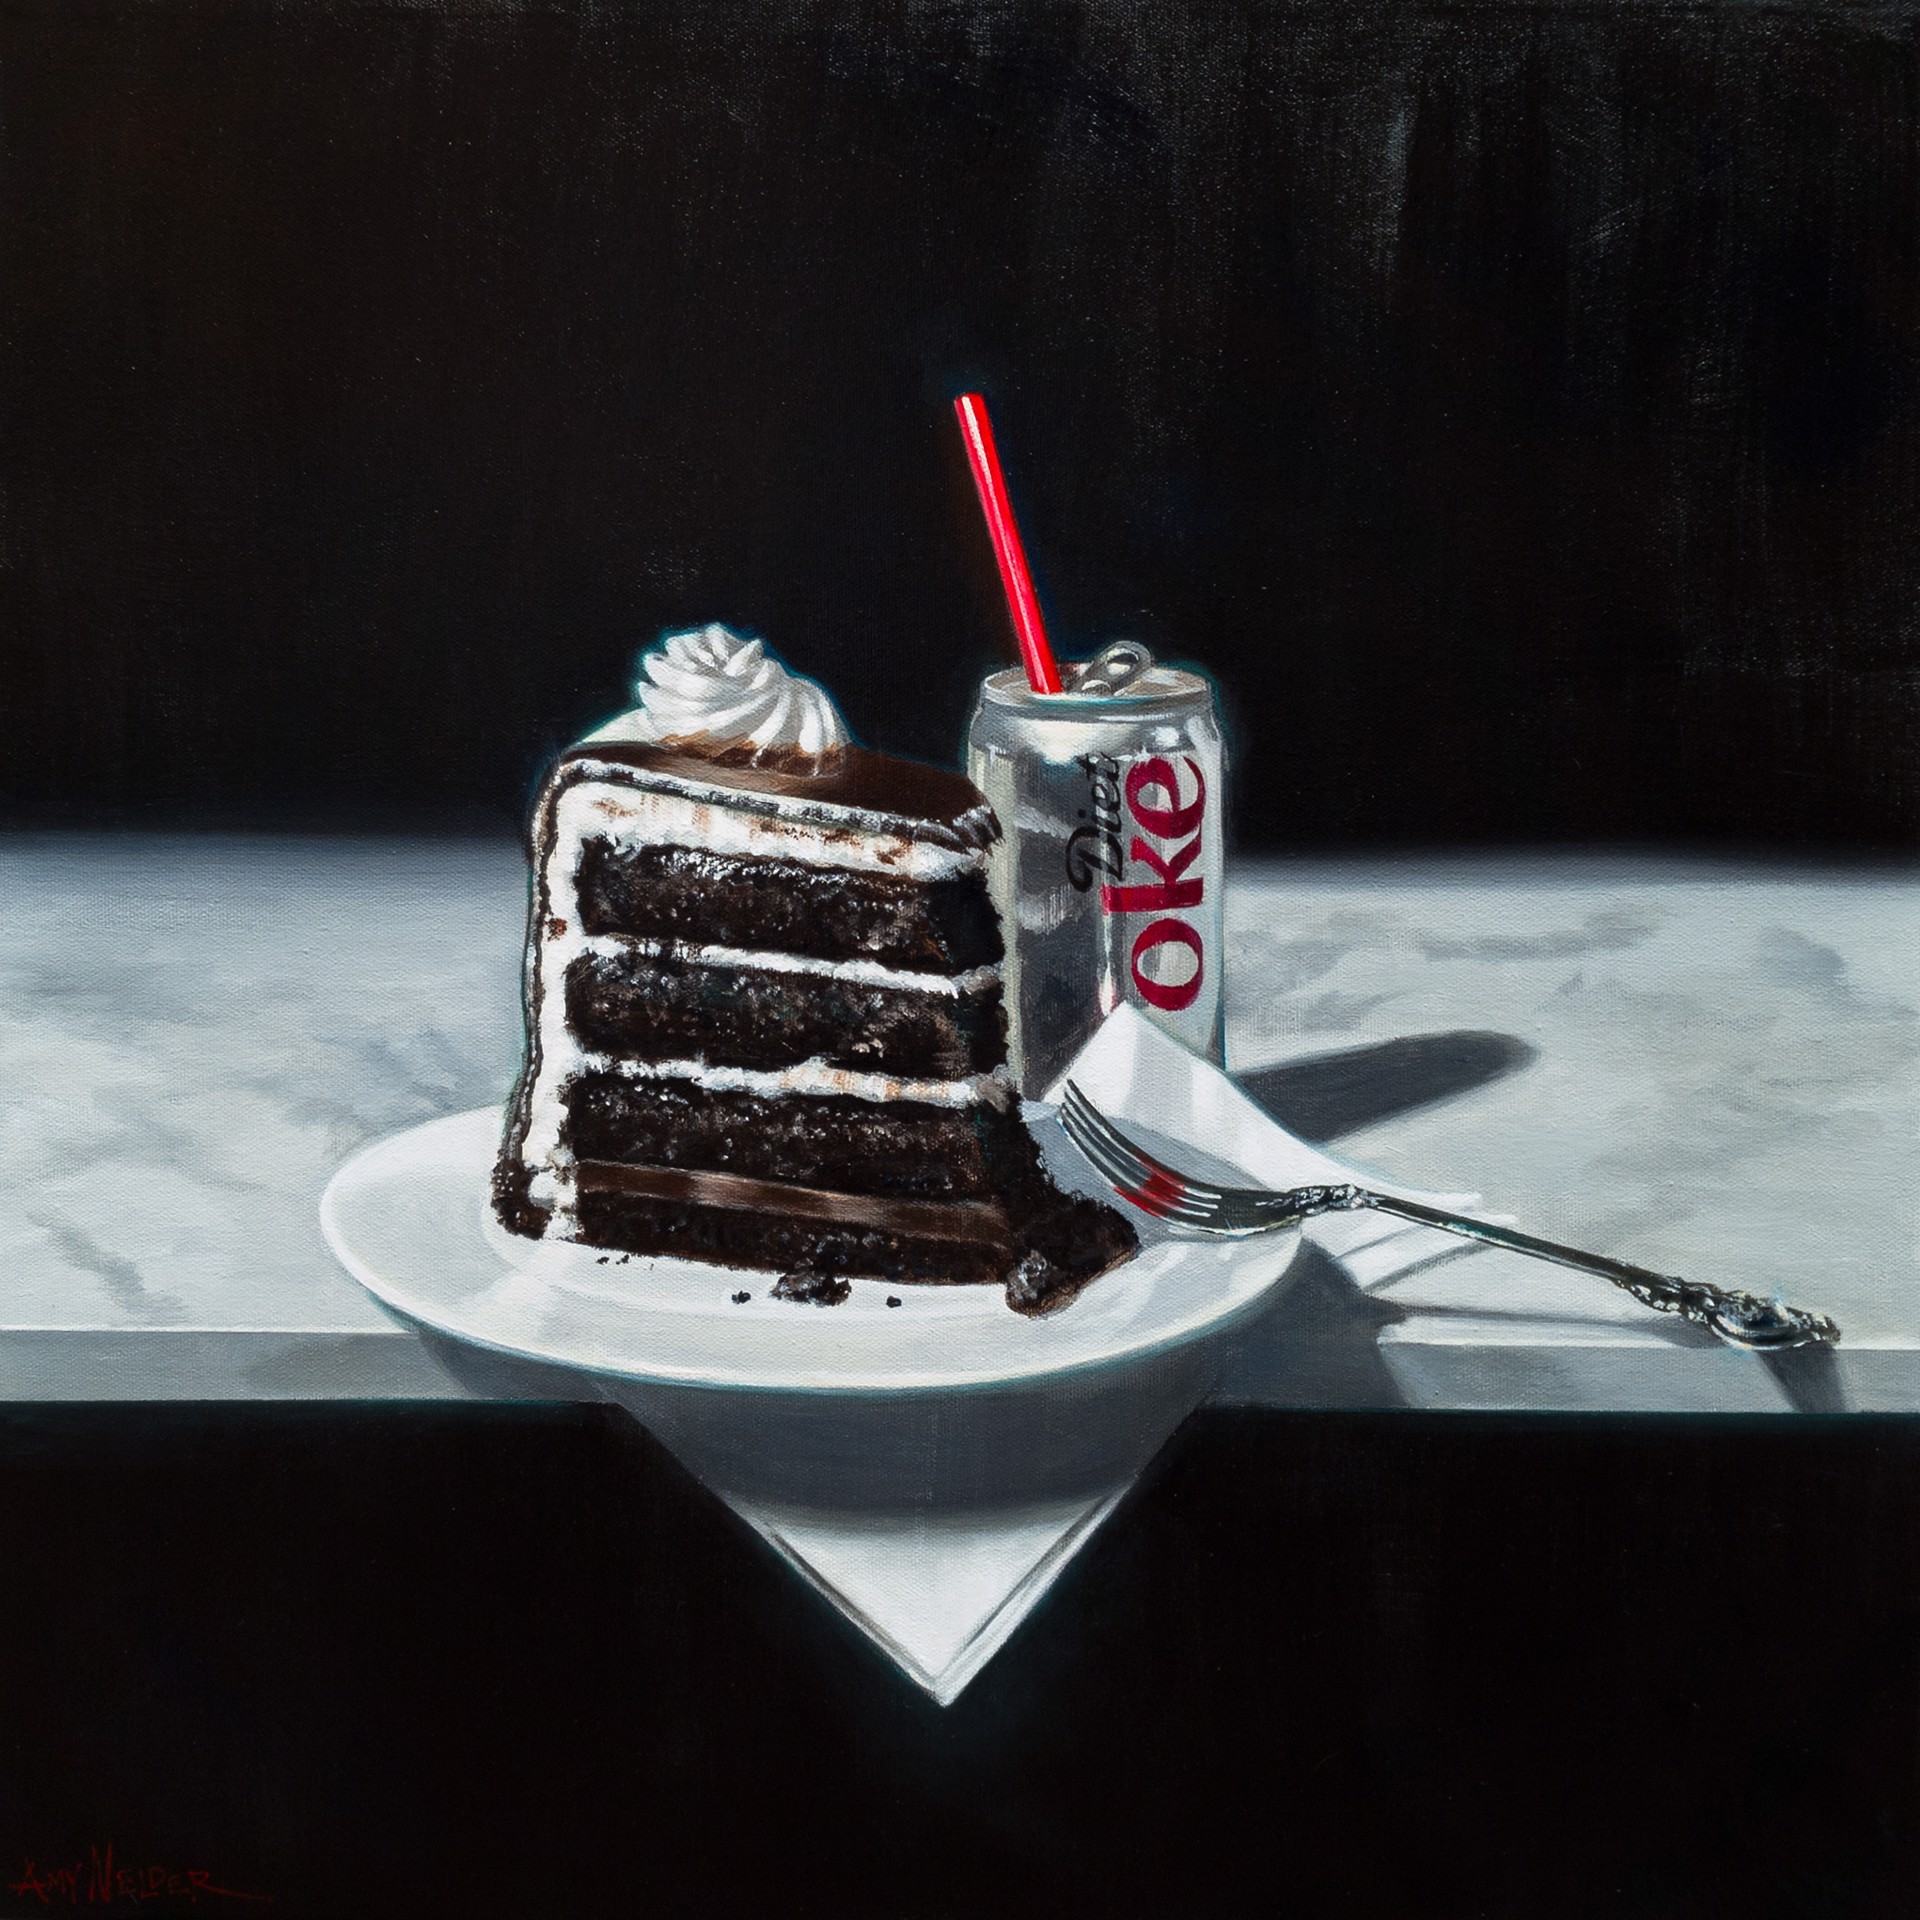 Kidding Myself with Cake by Amy Nelder